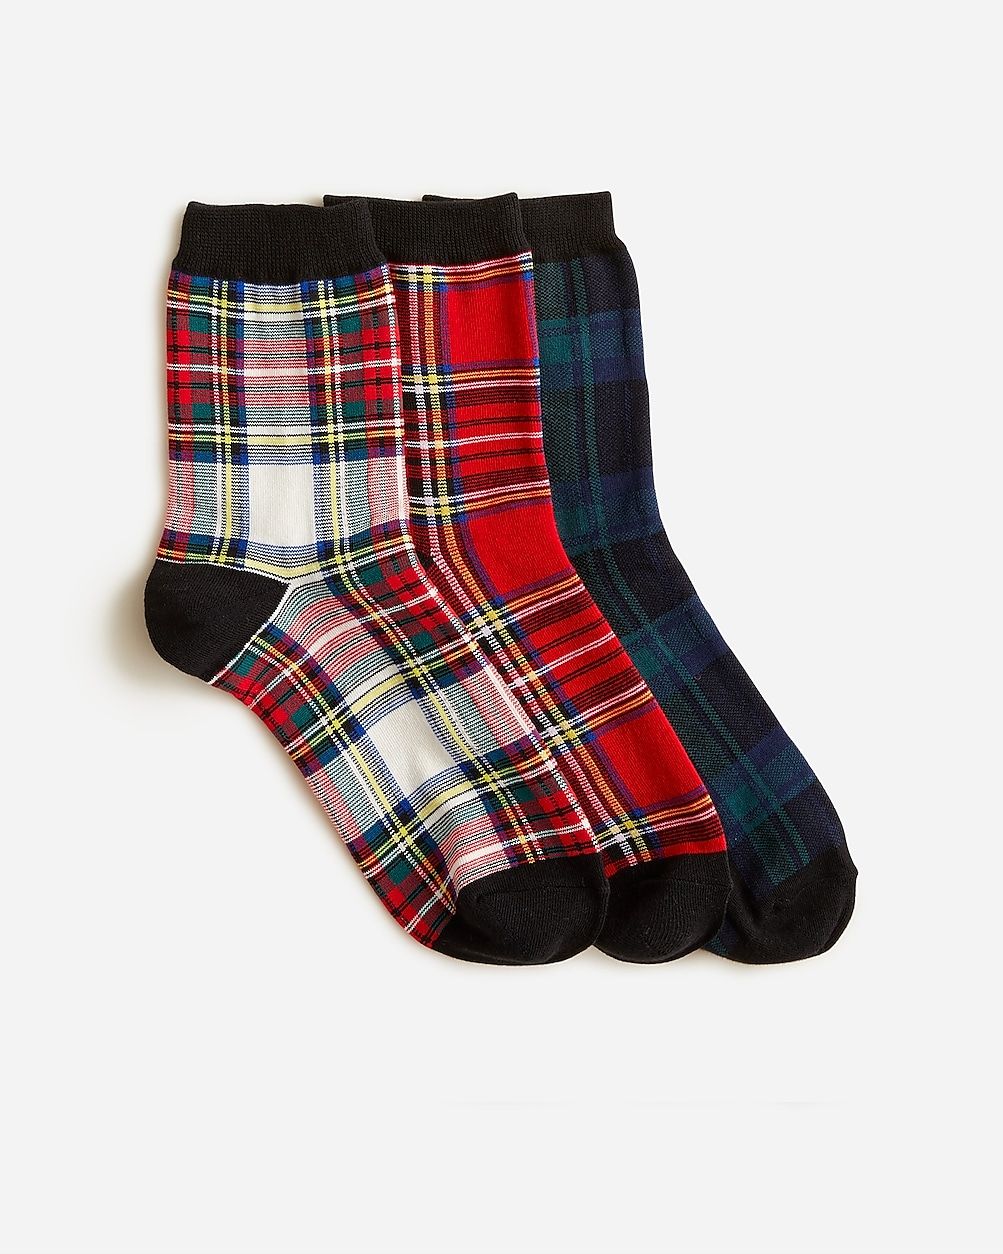 Tartan bootie socks three-pack | J.Crew US